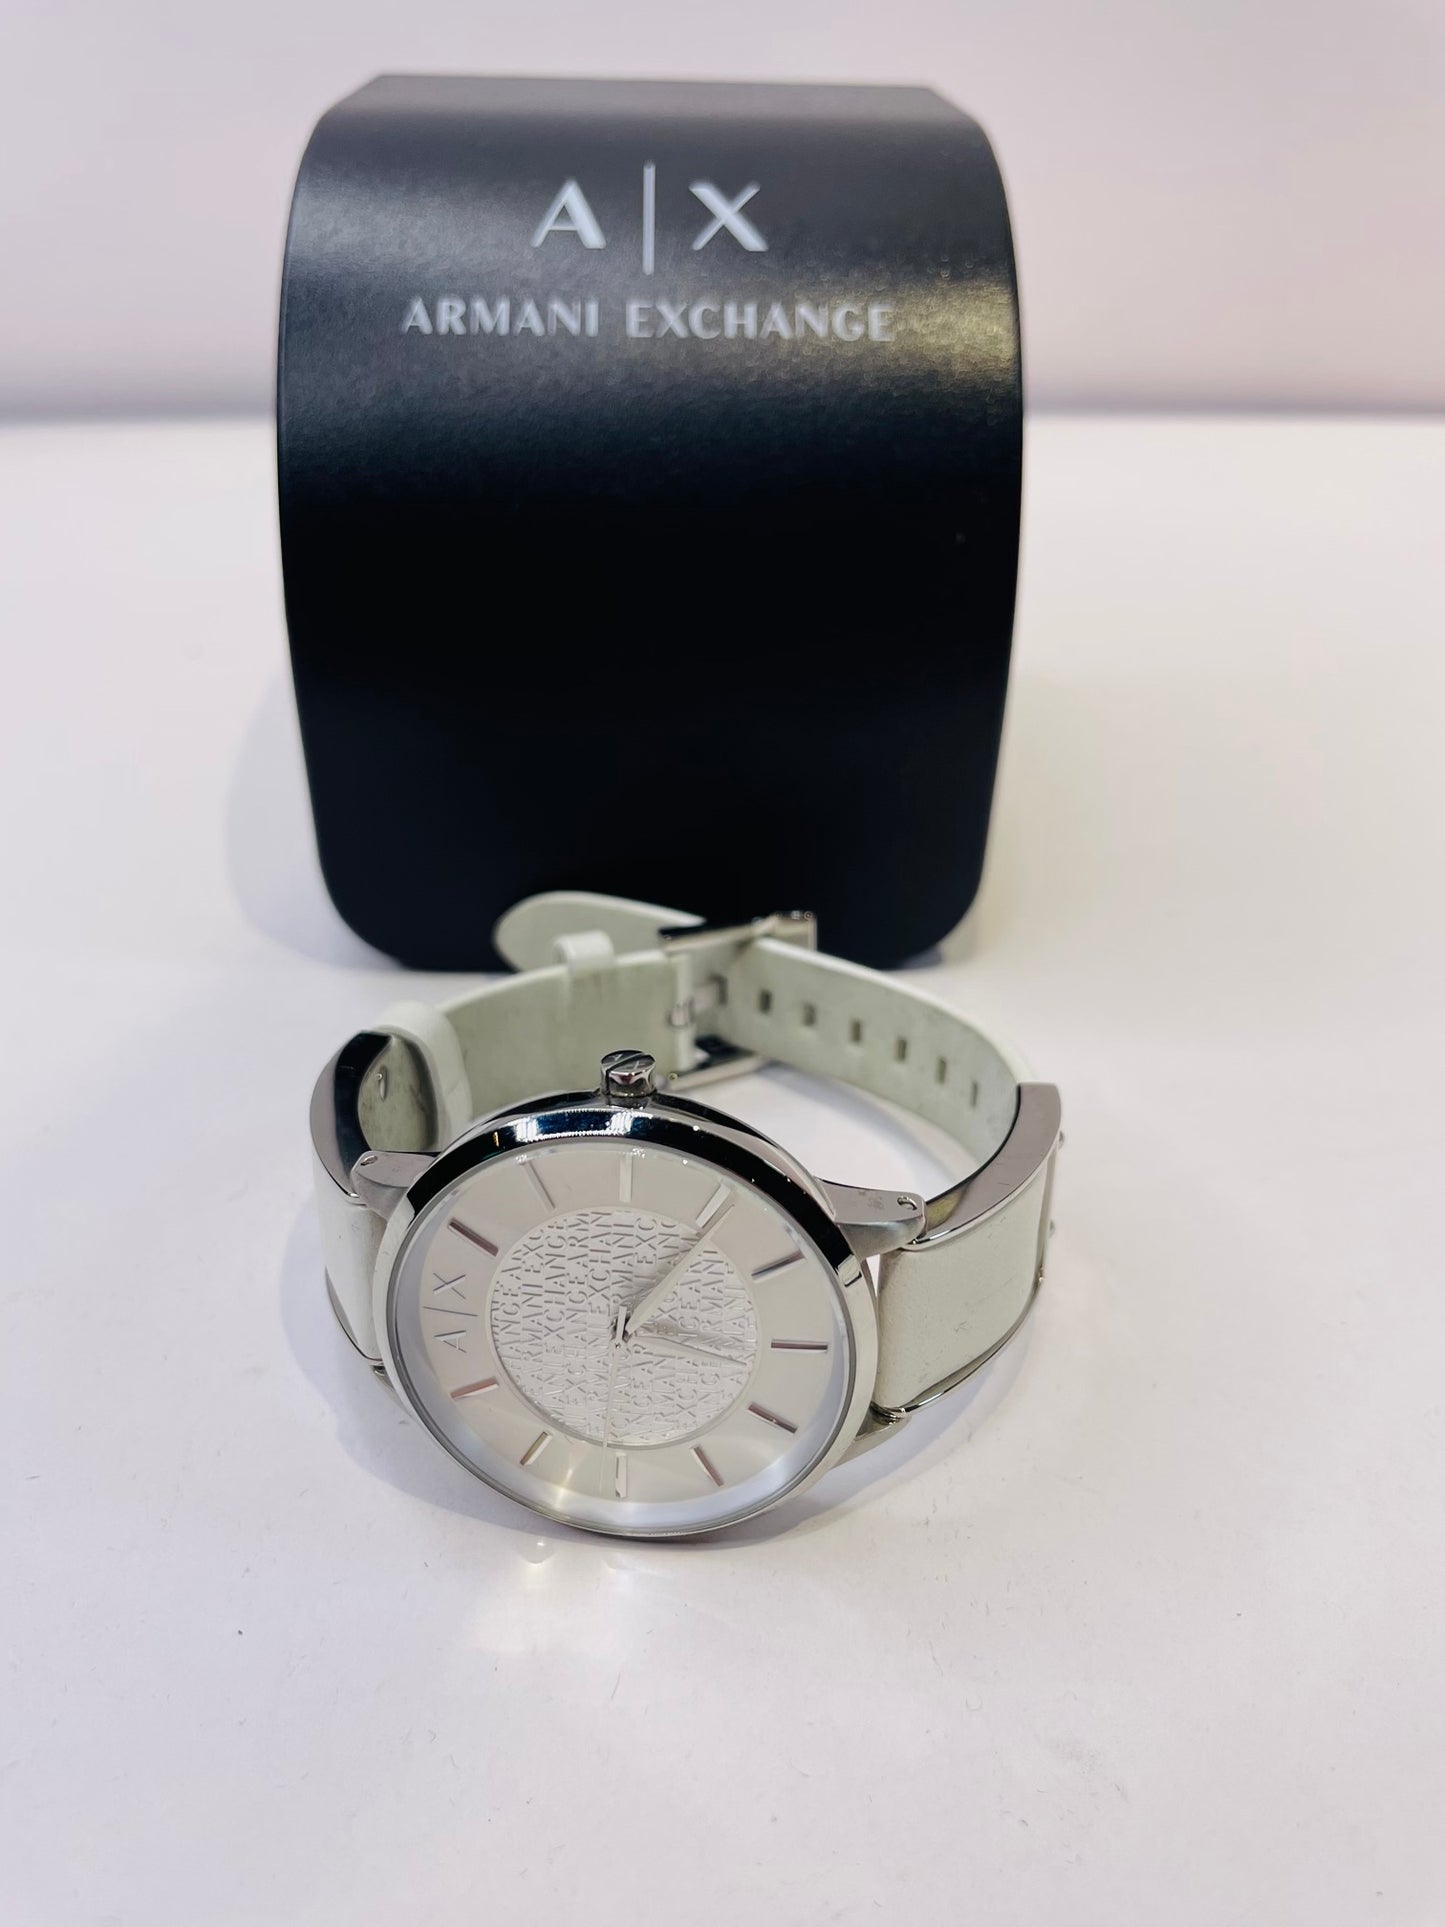 Armani exchange watch